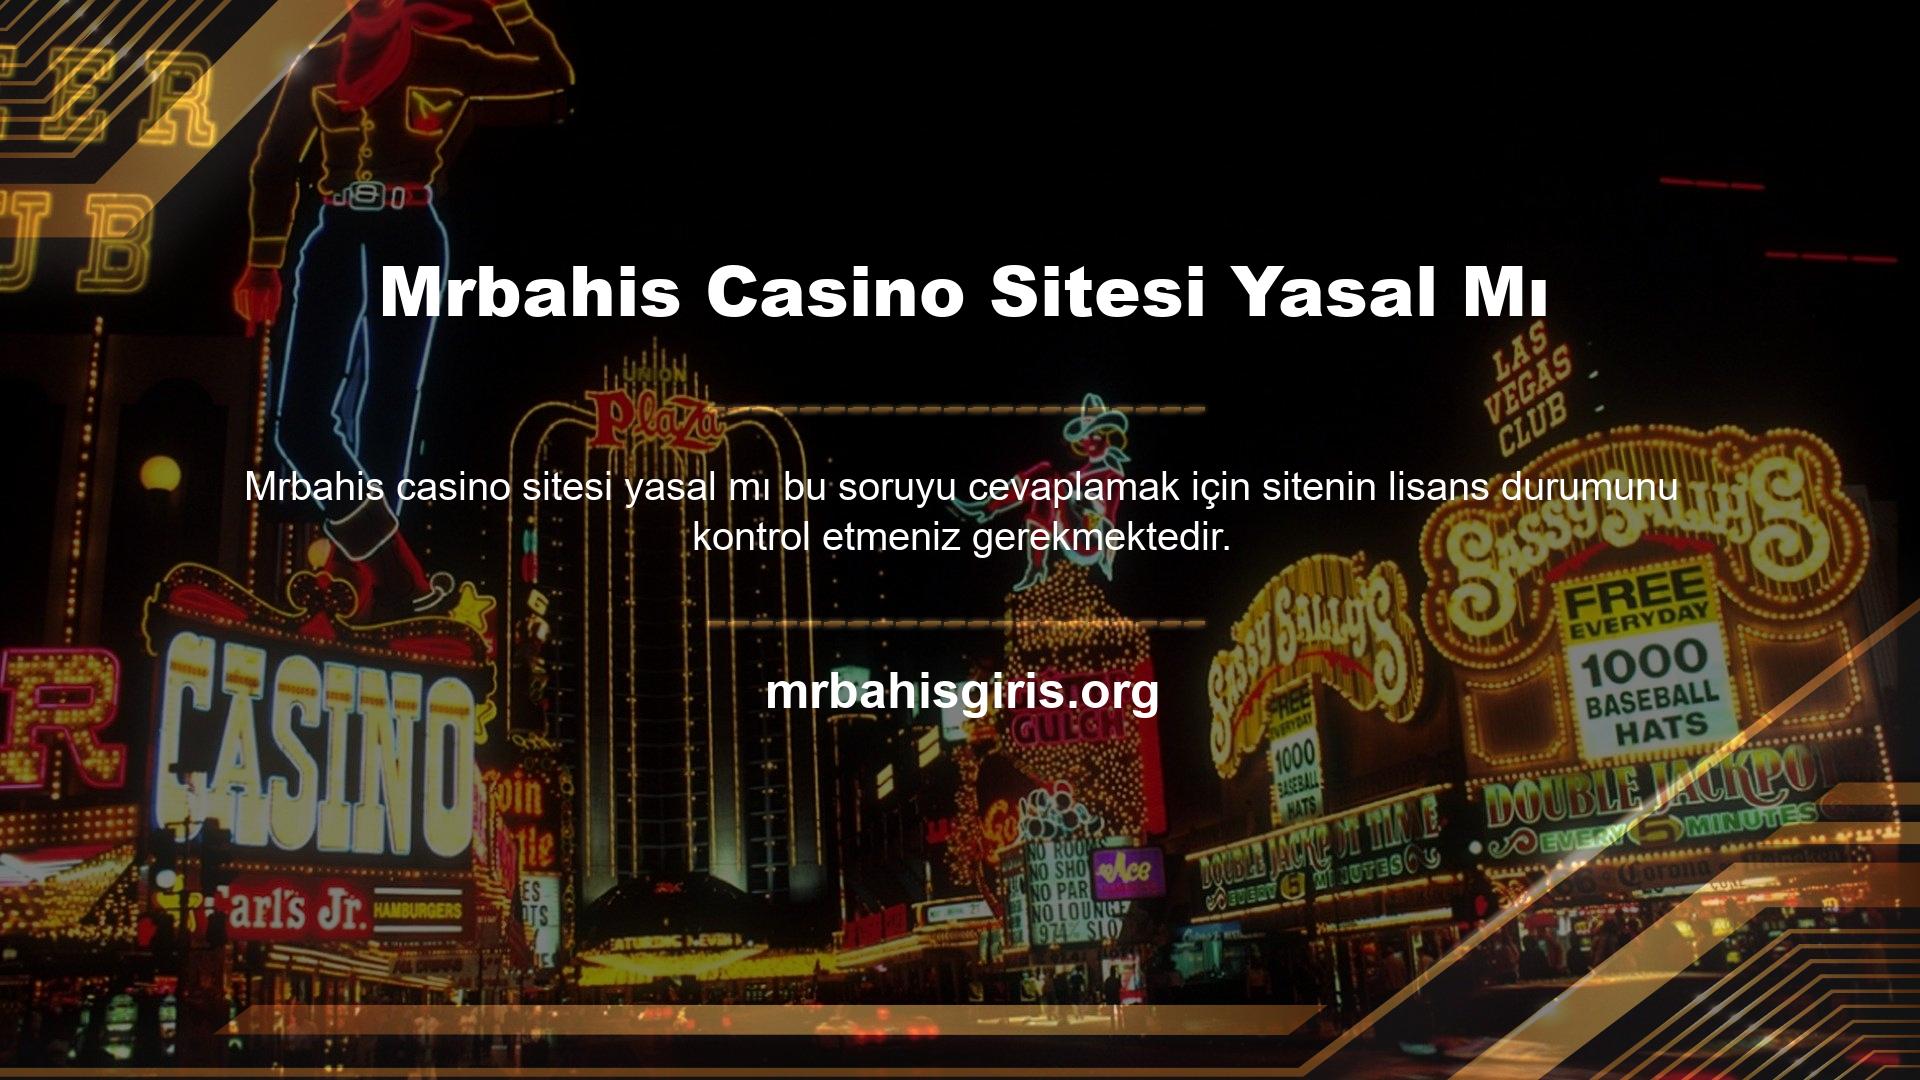 Çünkü bir casino sitesini yasallaştırırken en önemli kriter casino lisansıdır